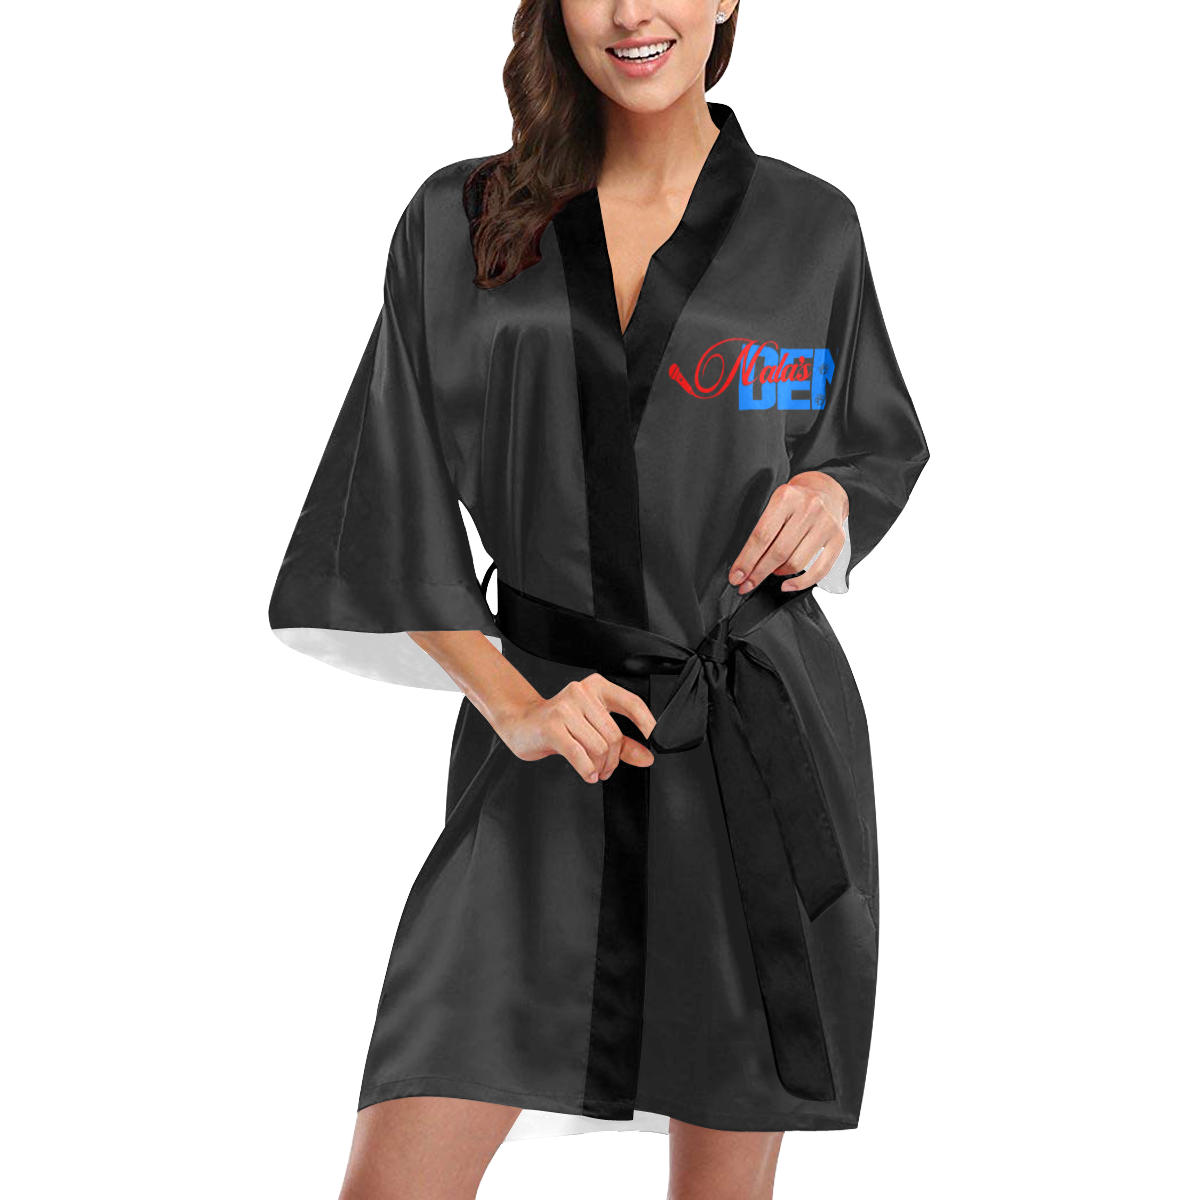 Nala's Den Kimono Robe